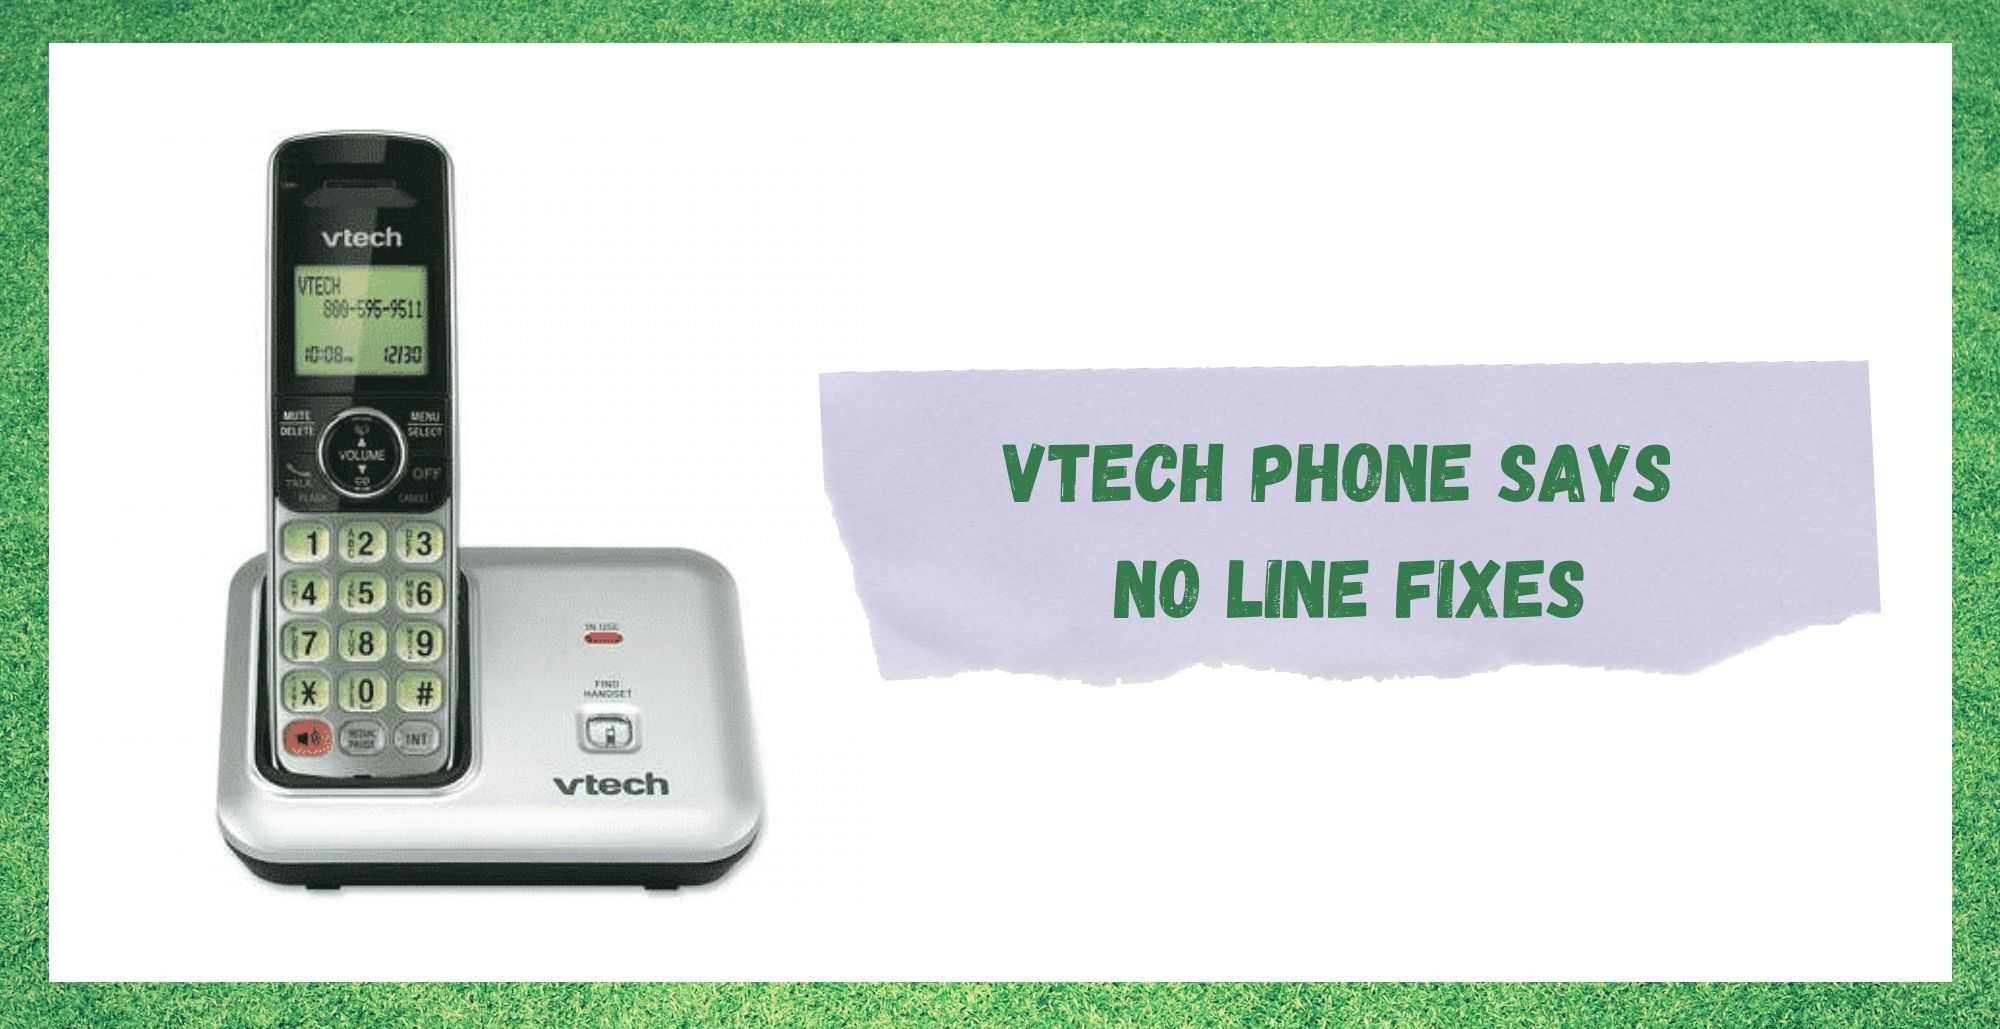 Vtech утас шугам байхгүй гэж хэлсэн: Засах 3 арга